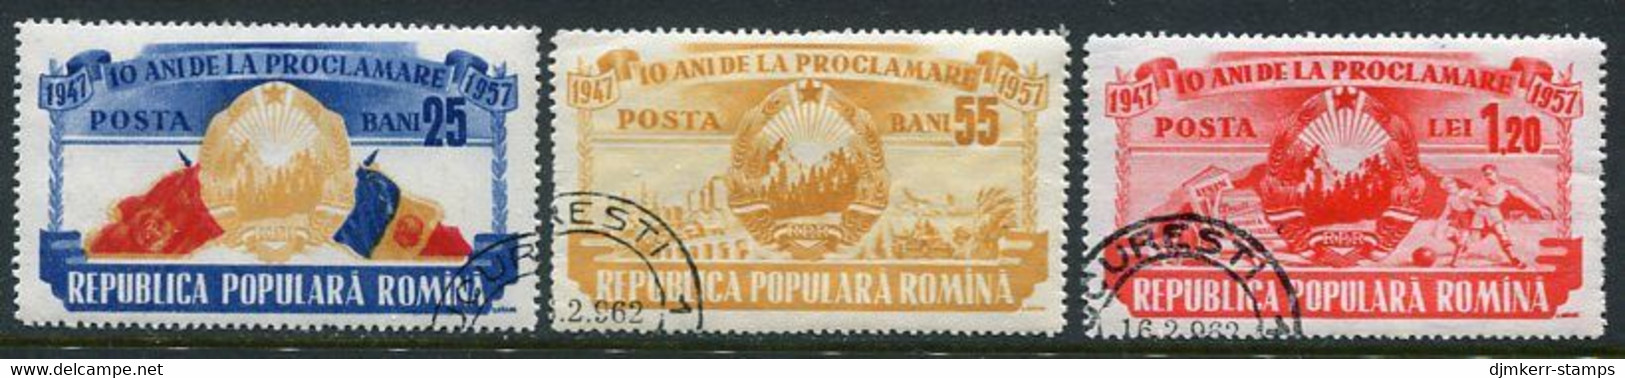 ROMANIA 1957 Anniversary Of Republic Used.  Michel 1694-96 - Usado